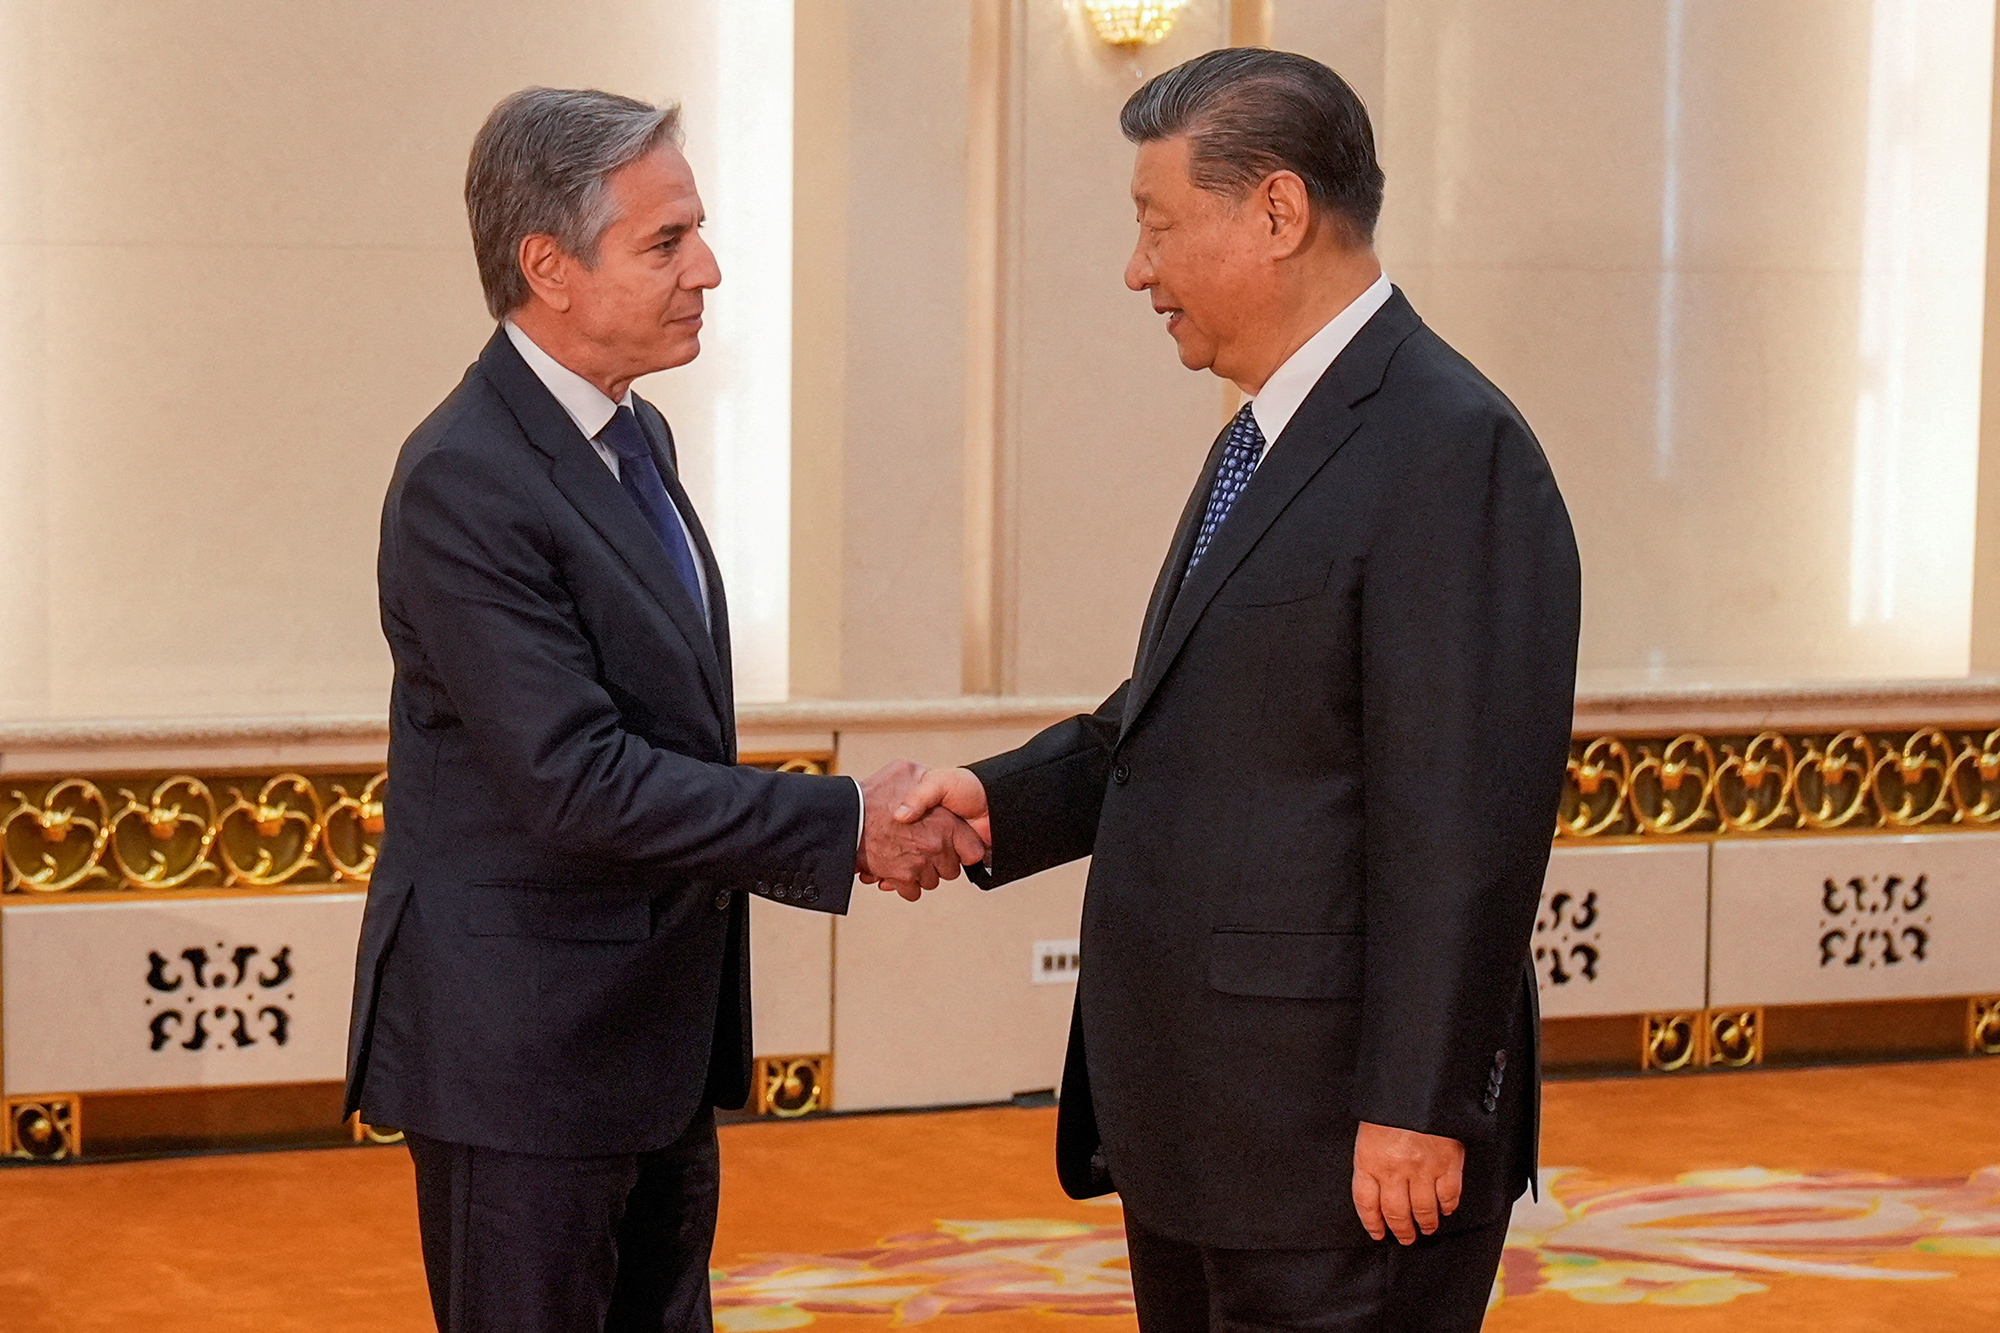 Chủ tịch nước Tập Cận Bình tiếp Ngoại trưởng Antony Blinken tại Bắc Kinh vào hôm qua (26.4)